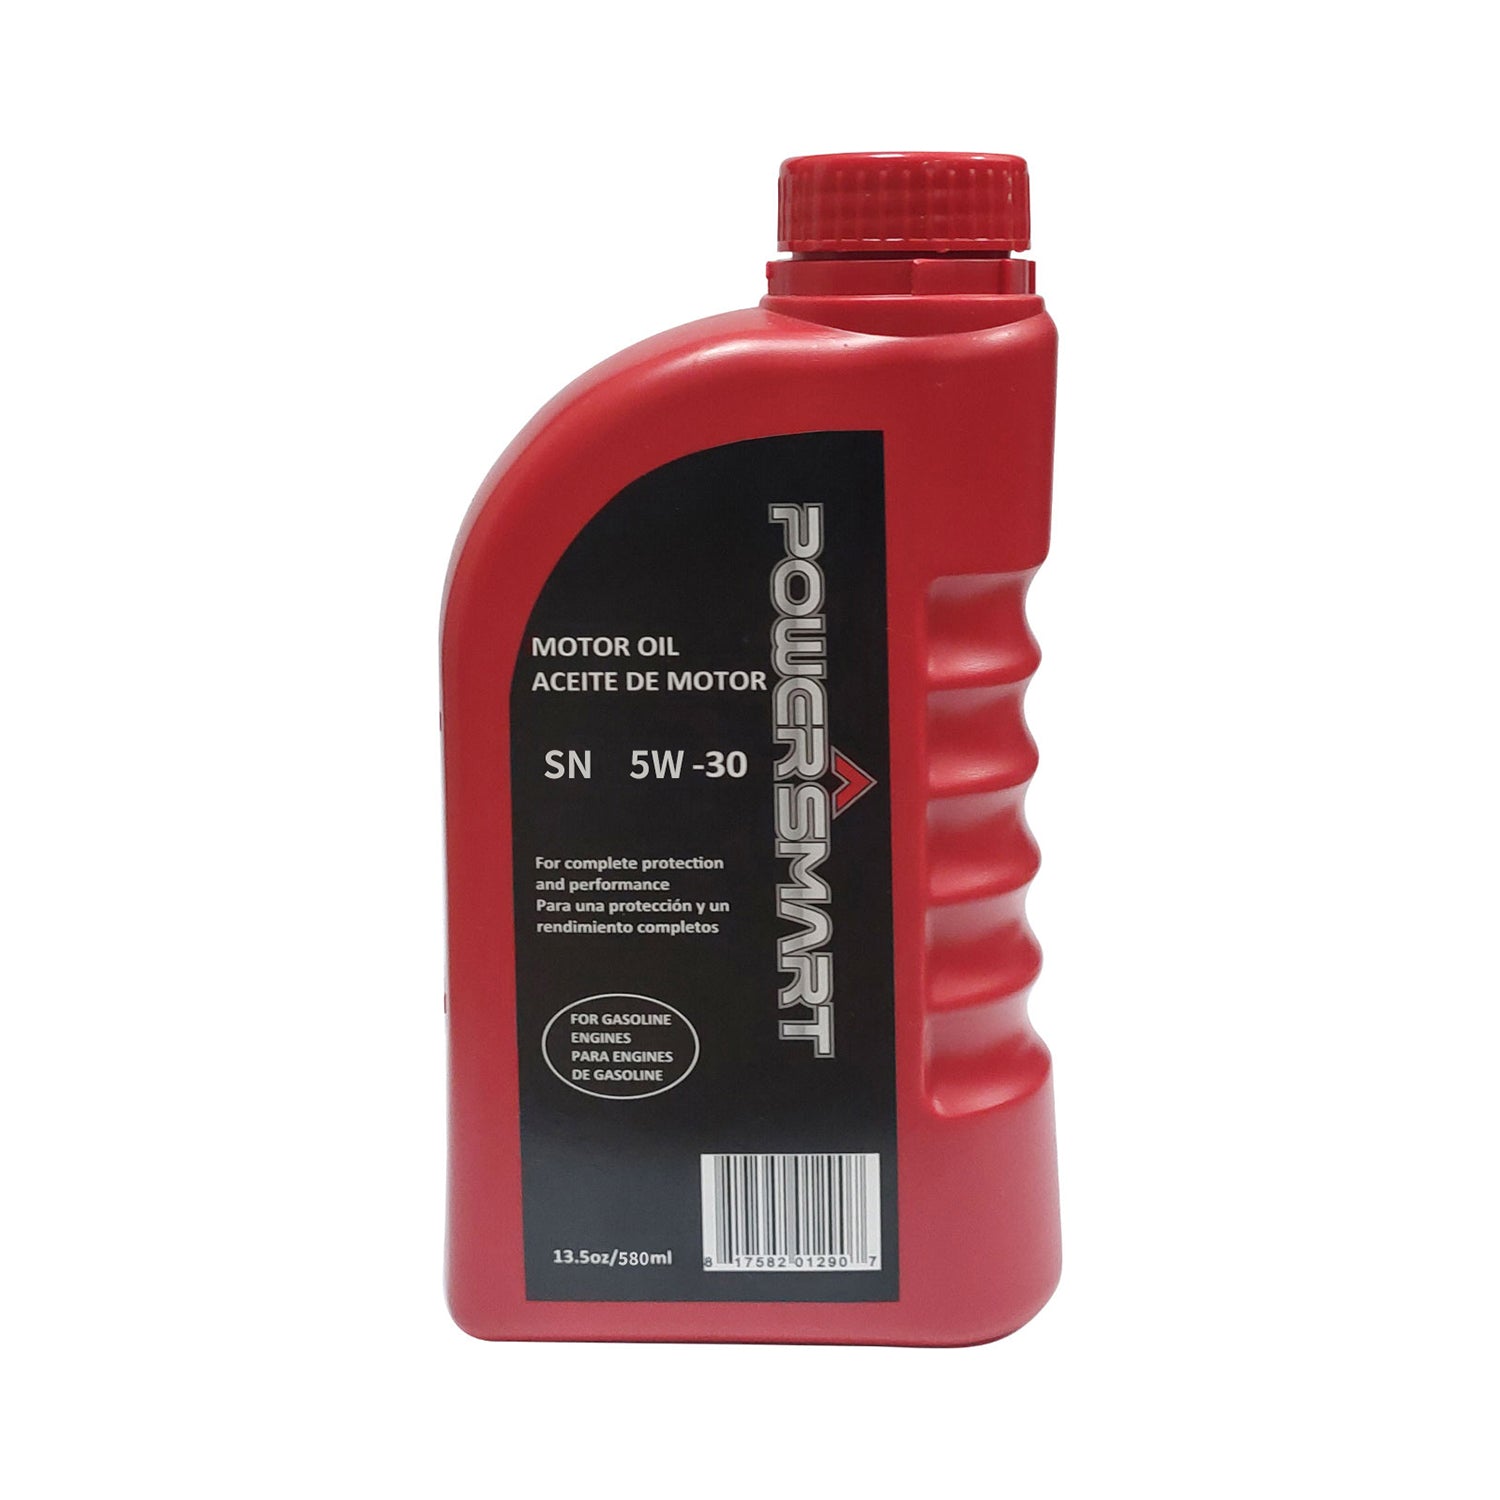 PowerSmart Part - Motor Oil, 5W-30, 580ml, 306090022